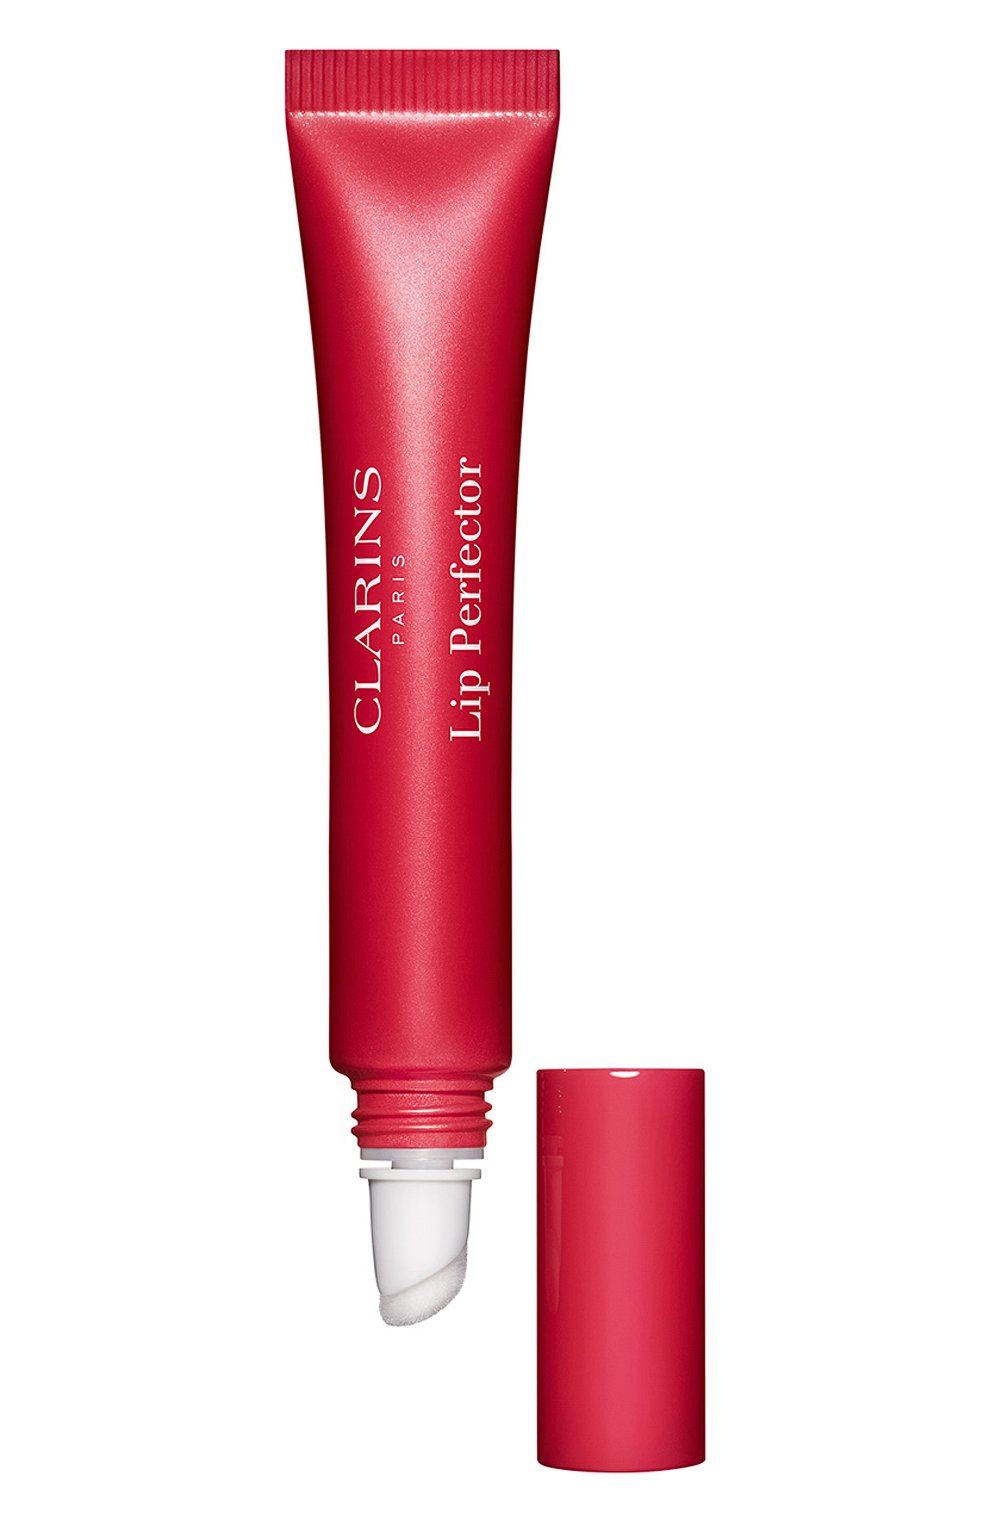 Блеск для губ lip perfector, оттенок 24 fuchsia glow (12ml) CLARINS  цвета, арт. 80098706 | Фото 3 (Обьем косметики: 100ml; Финишное покрытие: Блестящий)